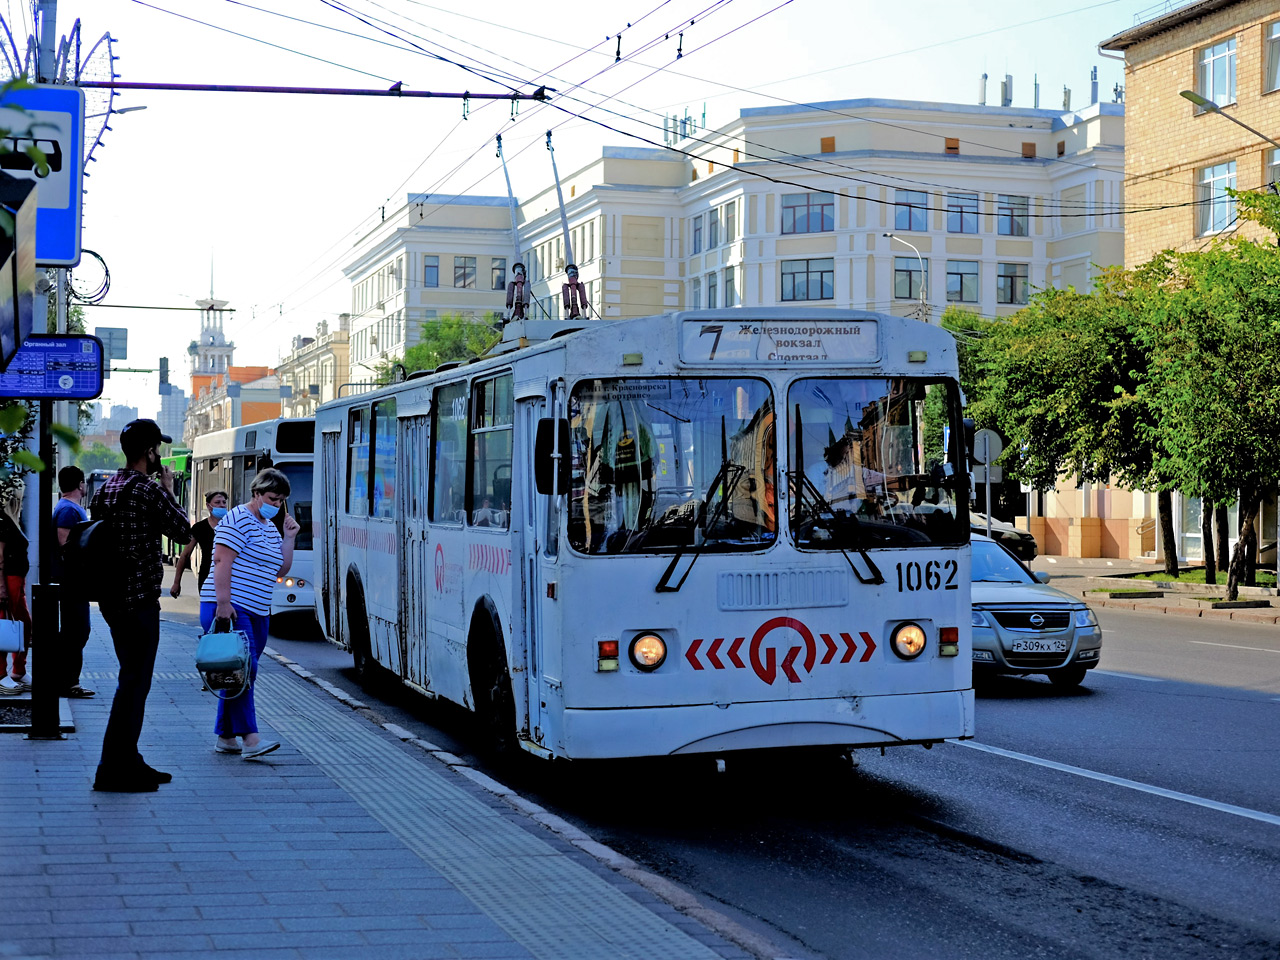 На троллейбусе и электричке можно будет доехать всего за 28 рублей, в противовес 32 руб. на маршрутке